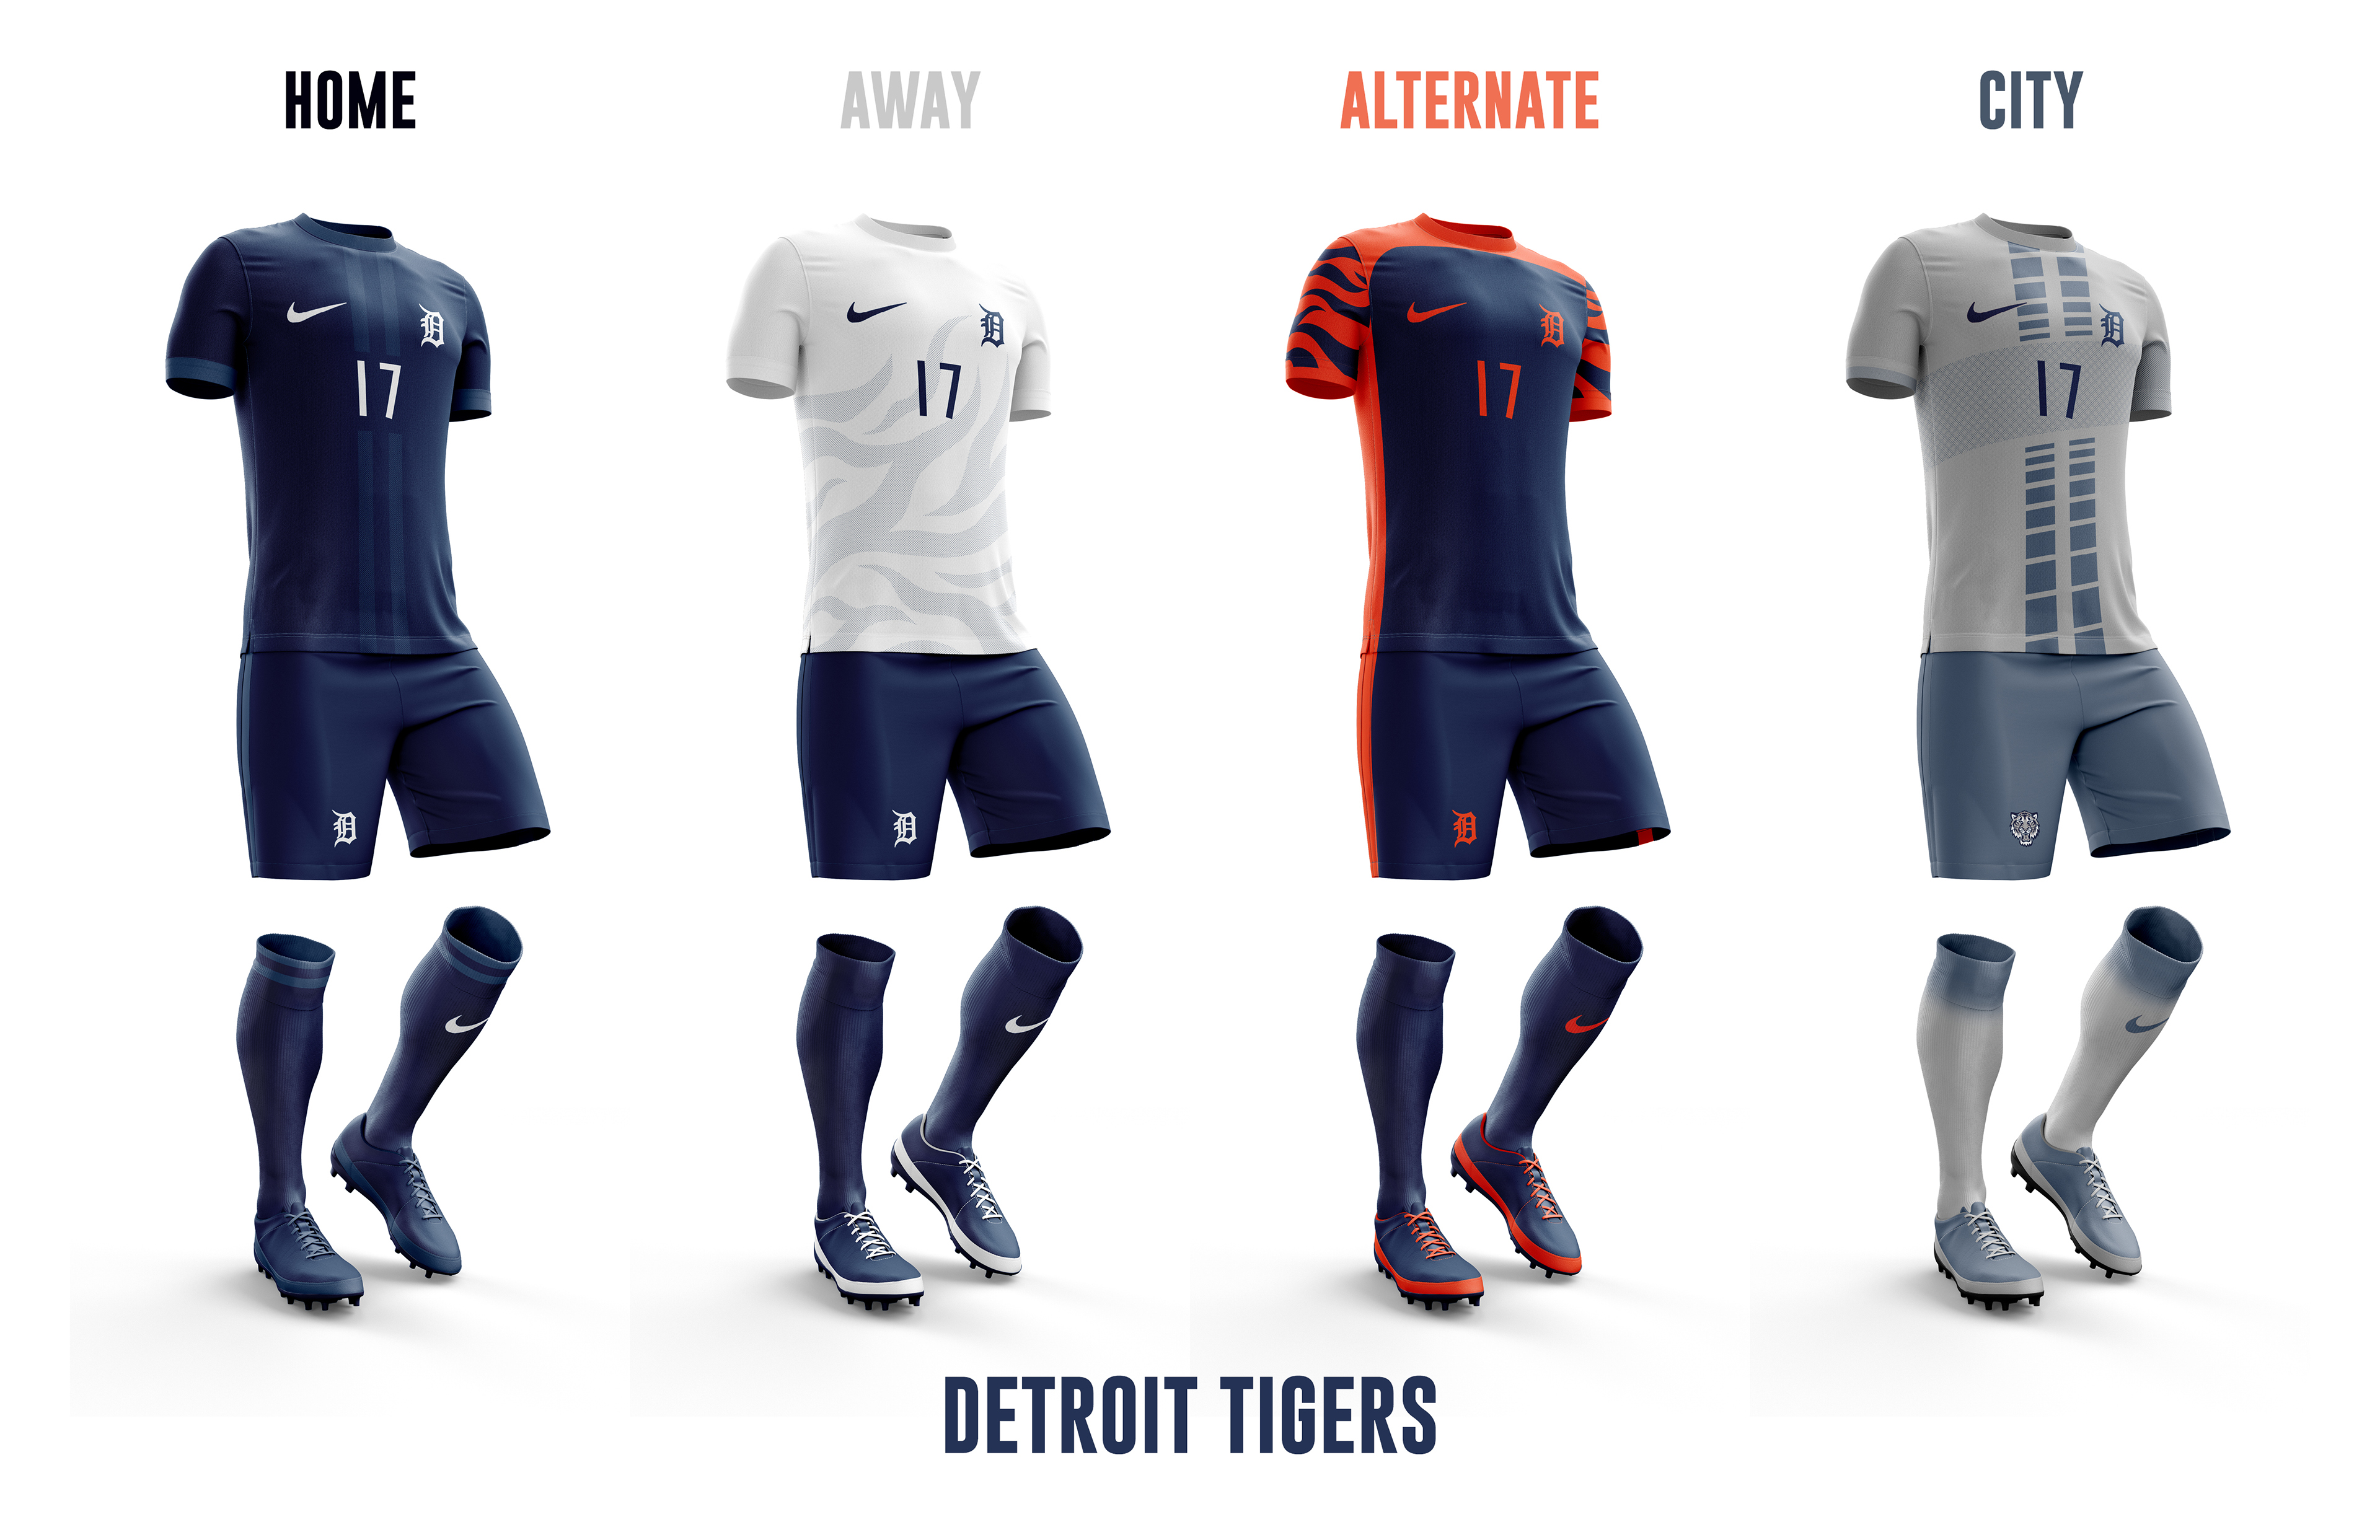 detroit tigers city uniform